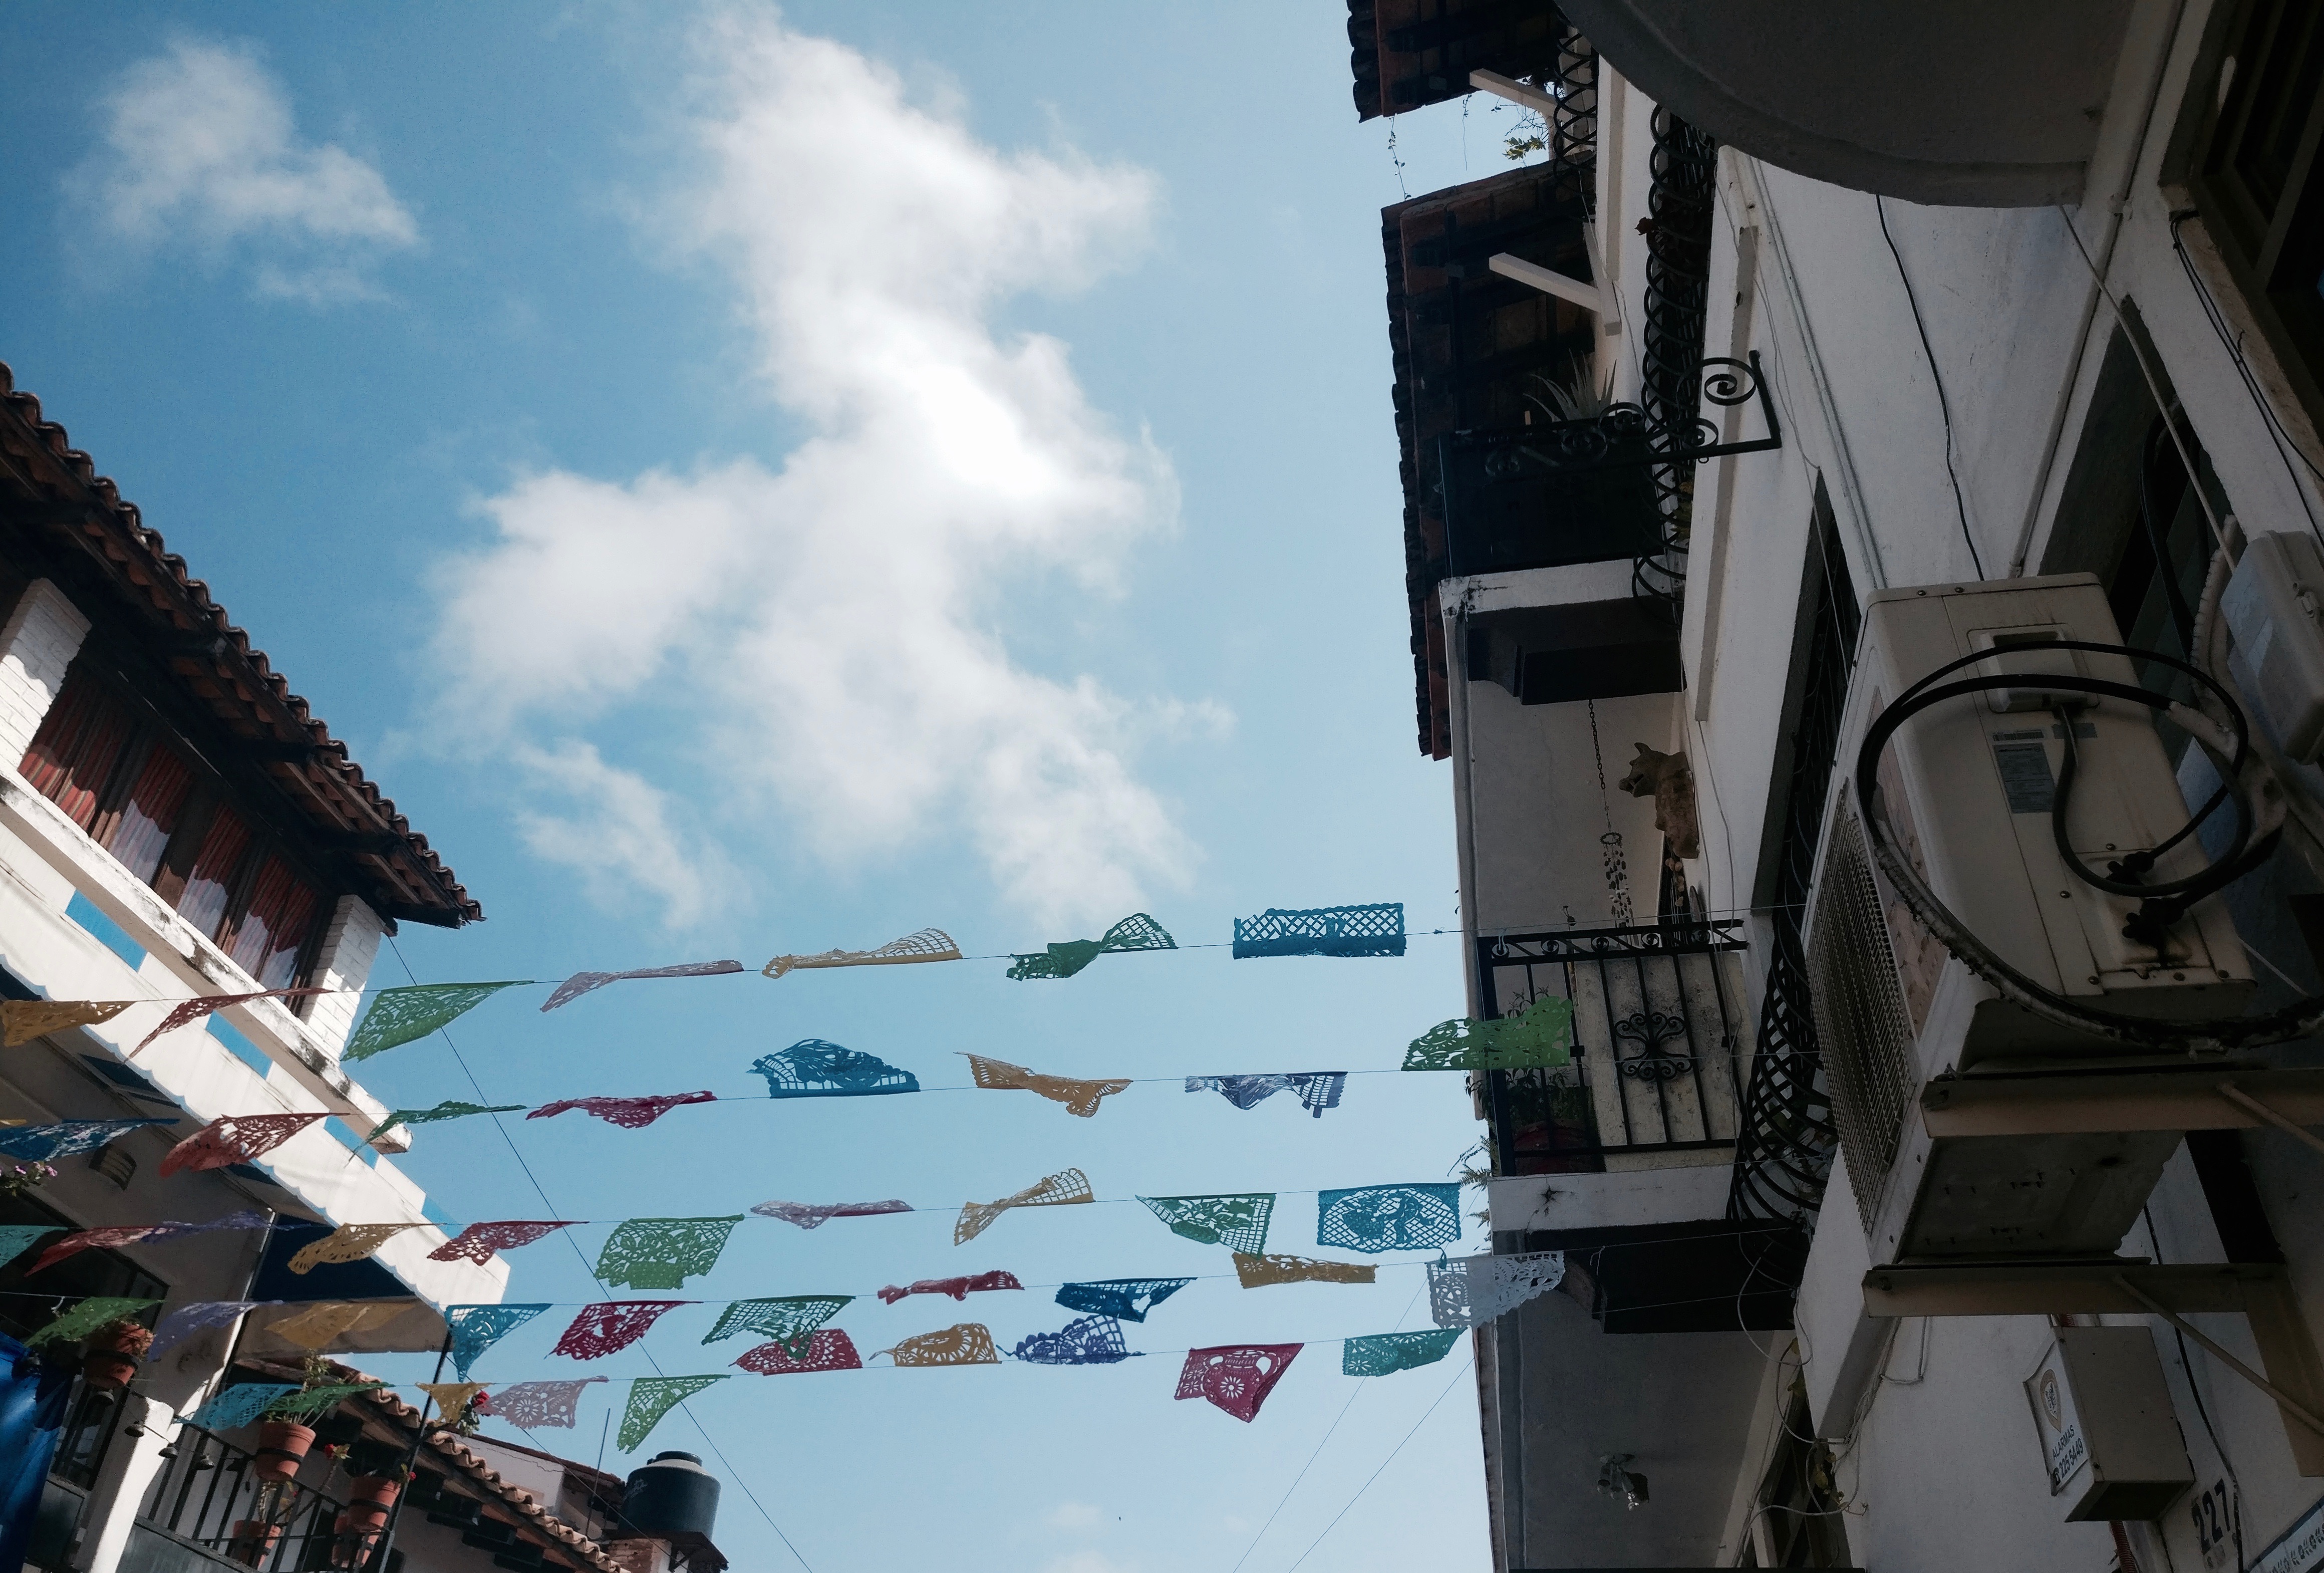 Papel Picado hangs over the street in Puerto Vallarta